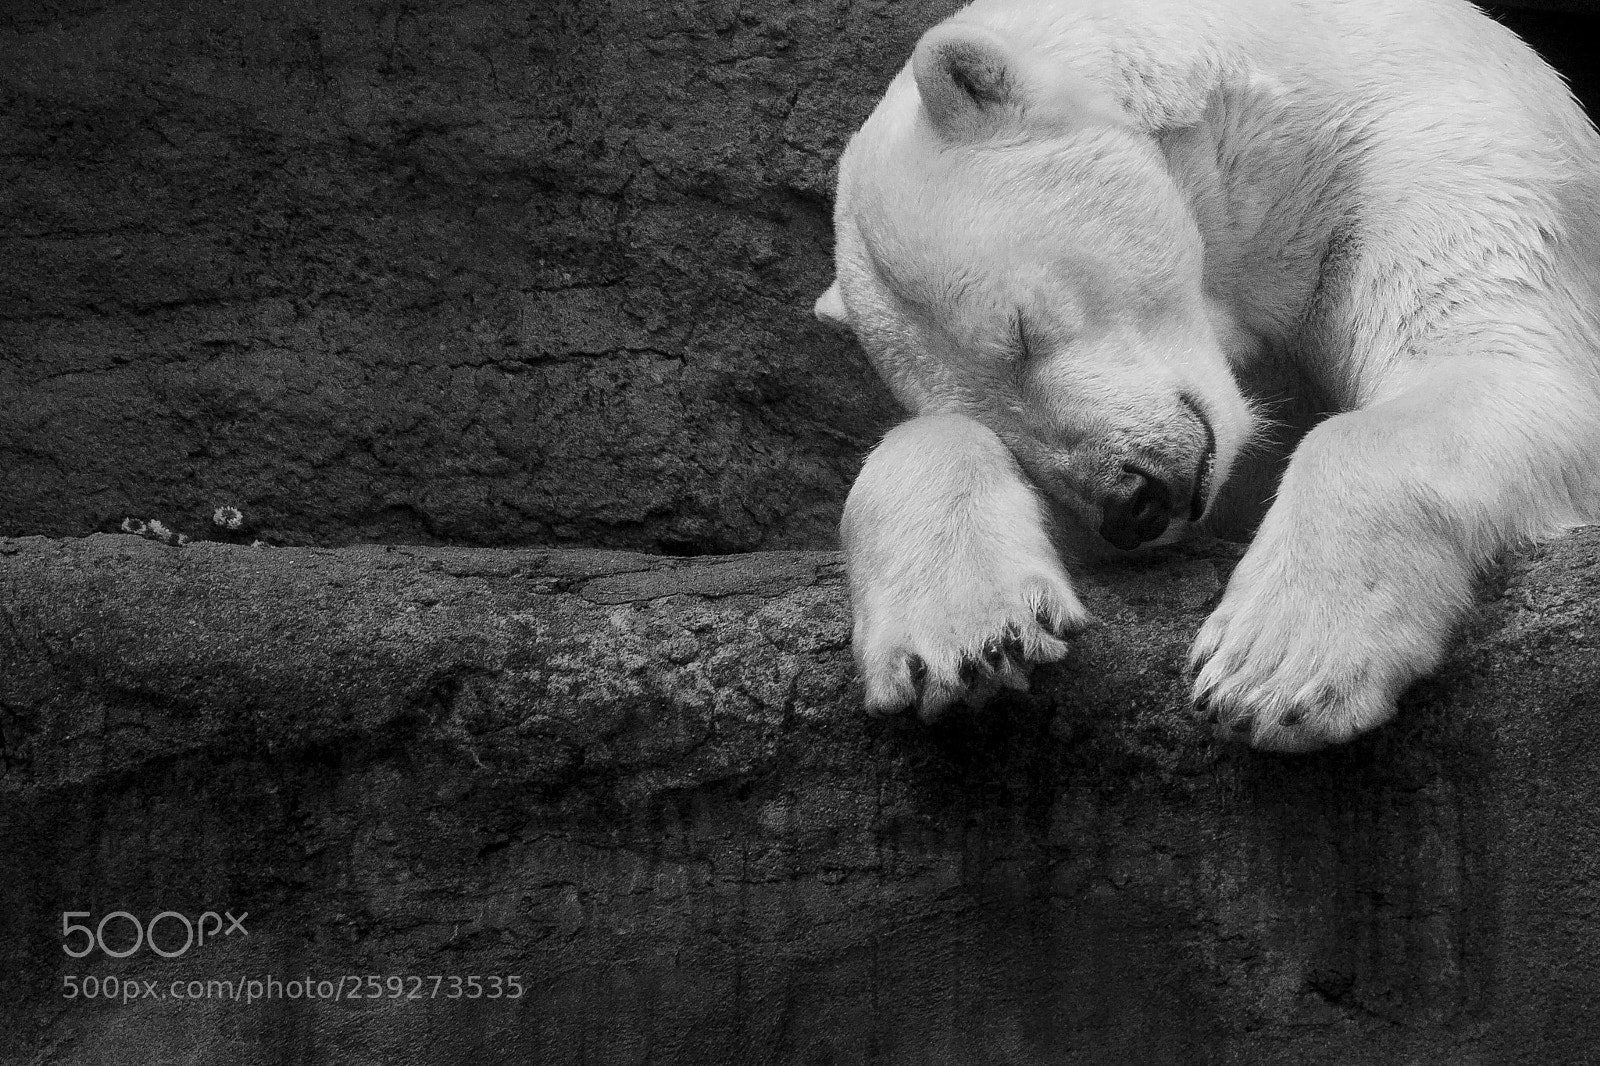 Canon EOS 50D sample photo. Polar bear resting on photography